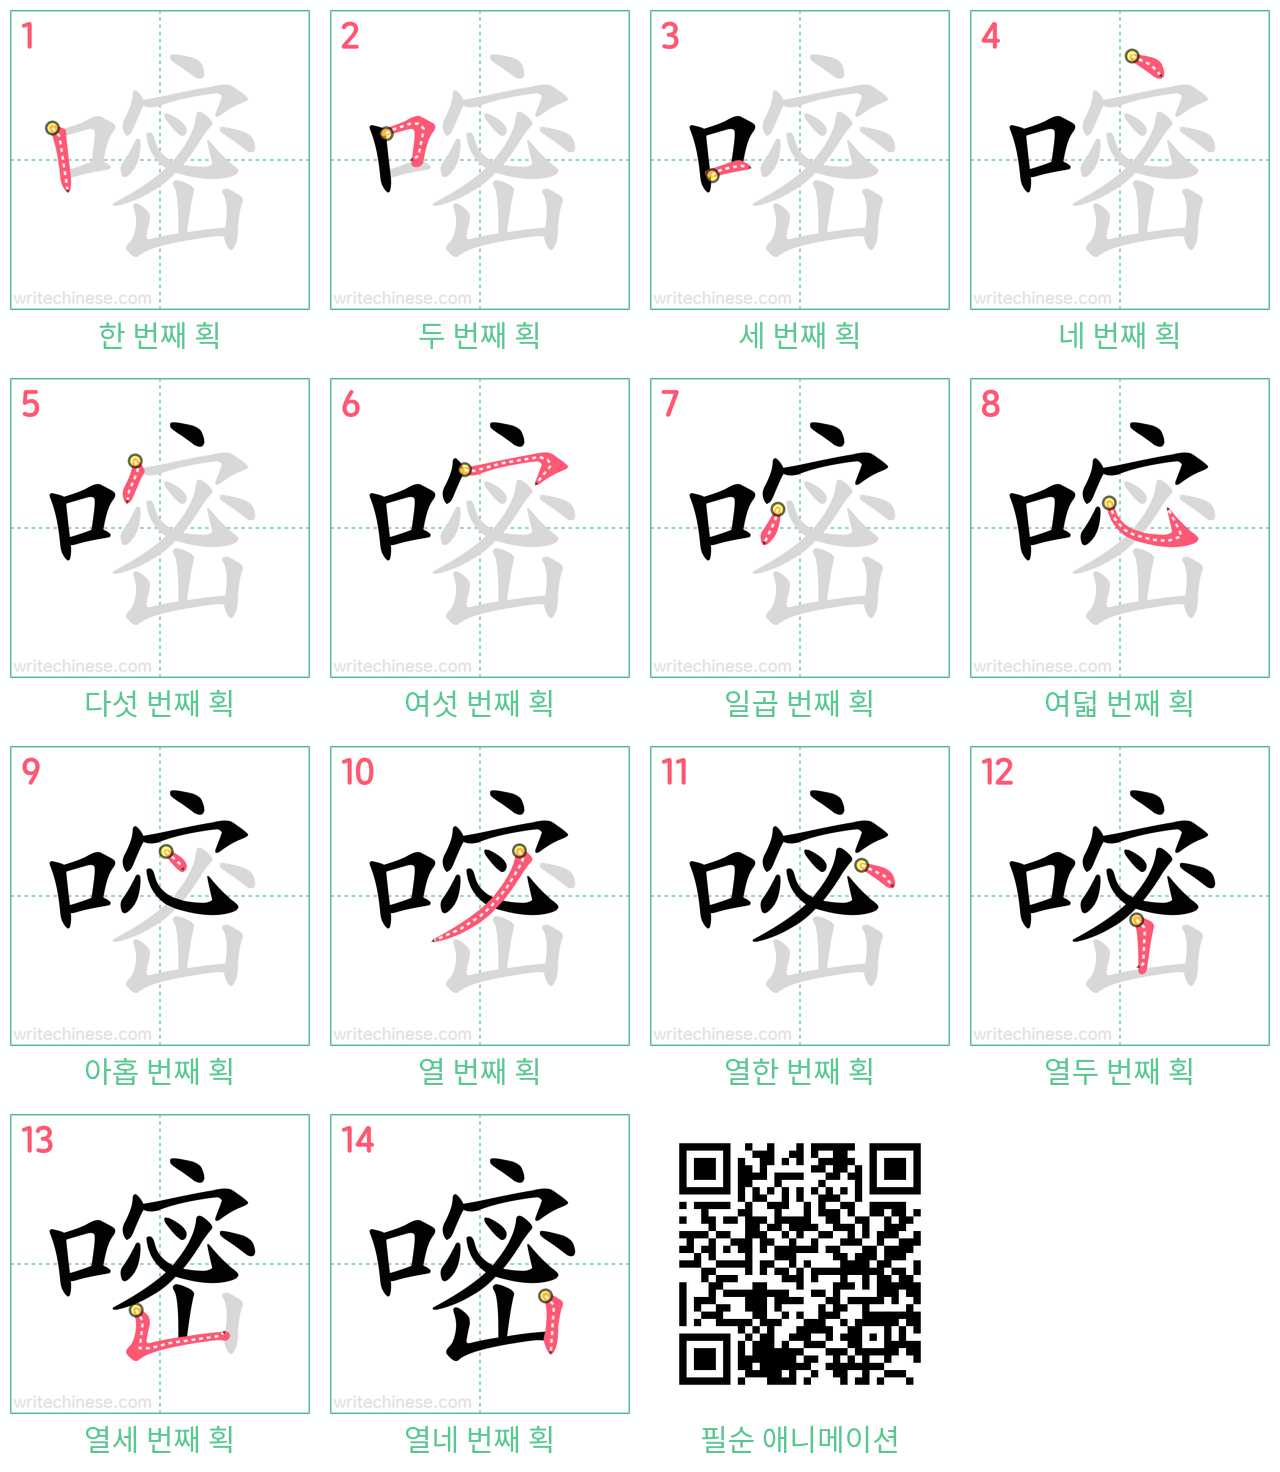 嘧 step-by-step stroke order diagrams